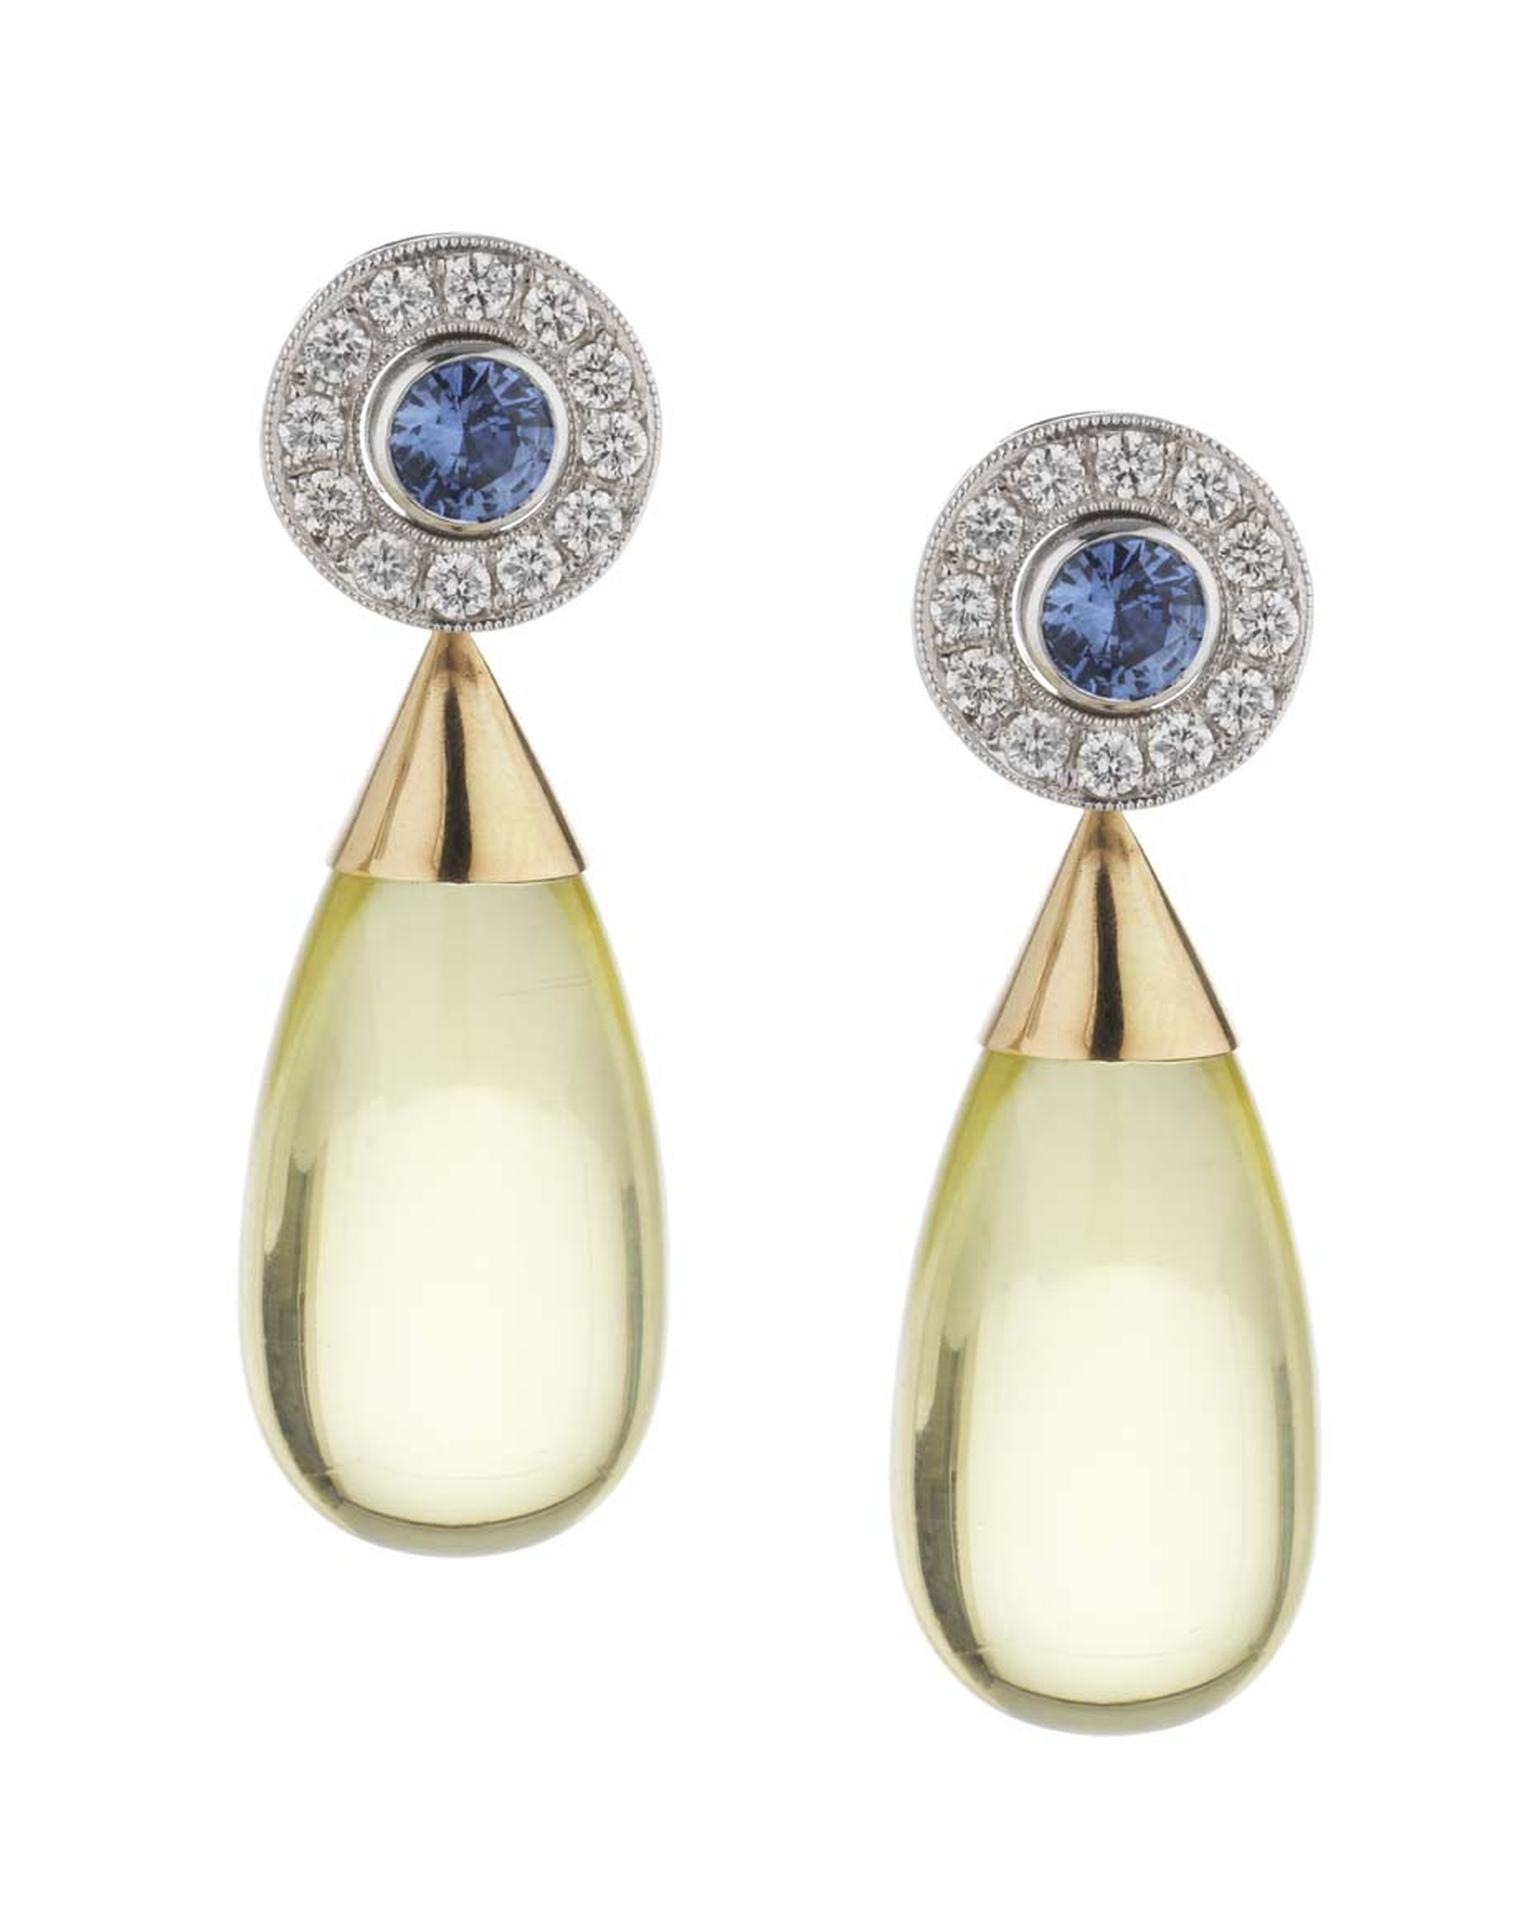 Holts London interchangeable Regent earrings with sapphire stud centres surrounded by diamonds and lemon quartz drops (sapphire and diamond studs £4,495; lemon quartz drops £650).